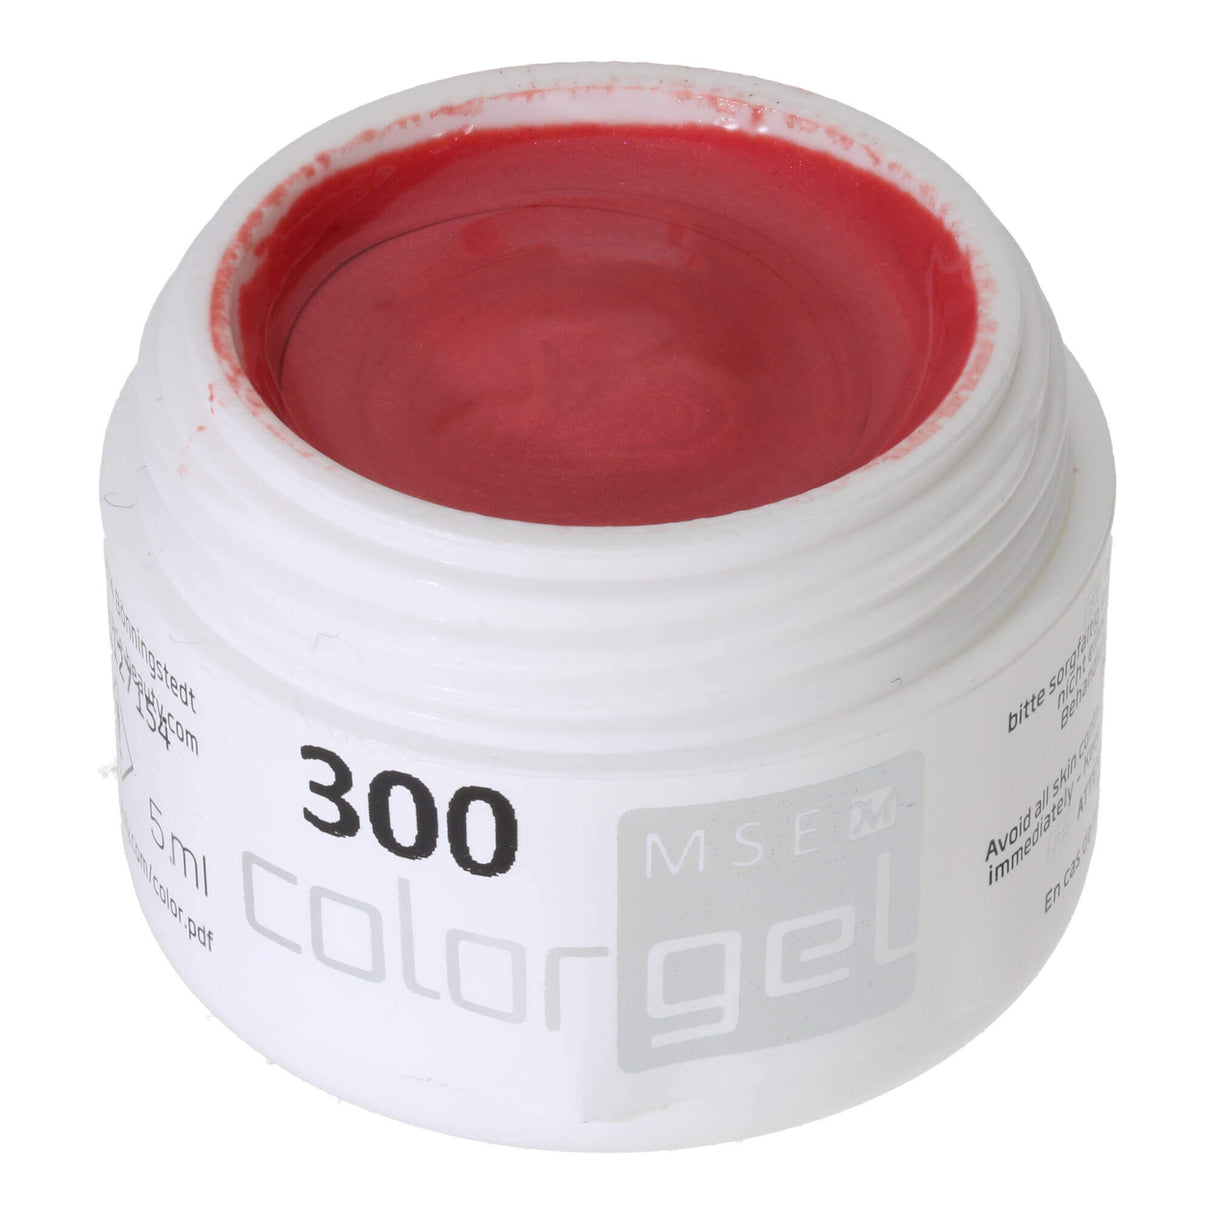 # 300 Premium EFFEKT Color Gel 5ml Màu đỏ mâm xôi nhạt với ánh sáng lung linh